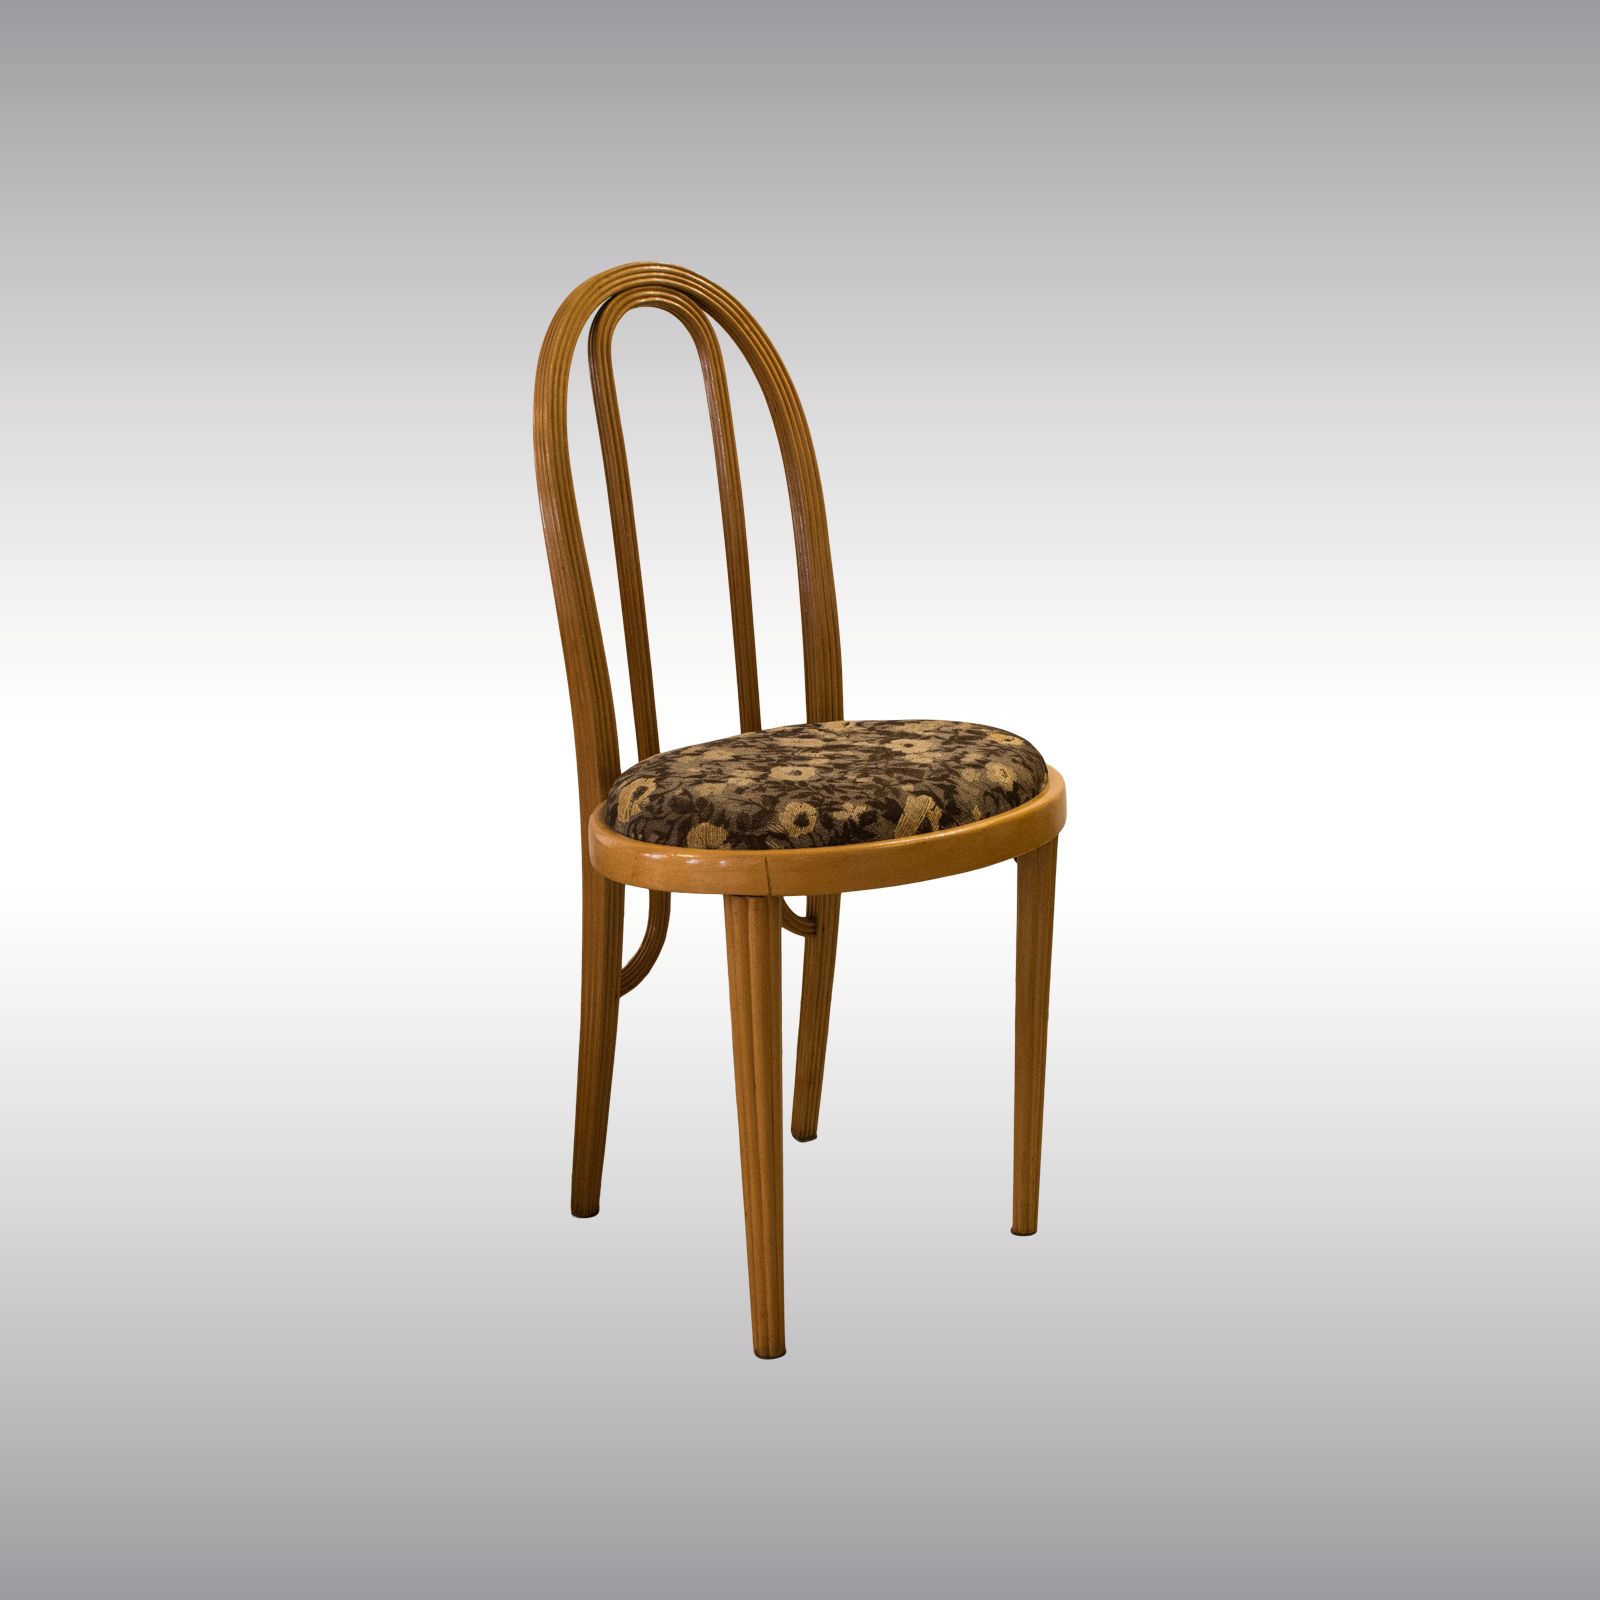 WOKA LAMPS VIENNA - OrderNr.: 80009|Sehr seltener Stuhl von Otto Prutscher und Thonet aus 1908 - Design: Otto Prutscher